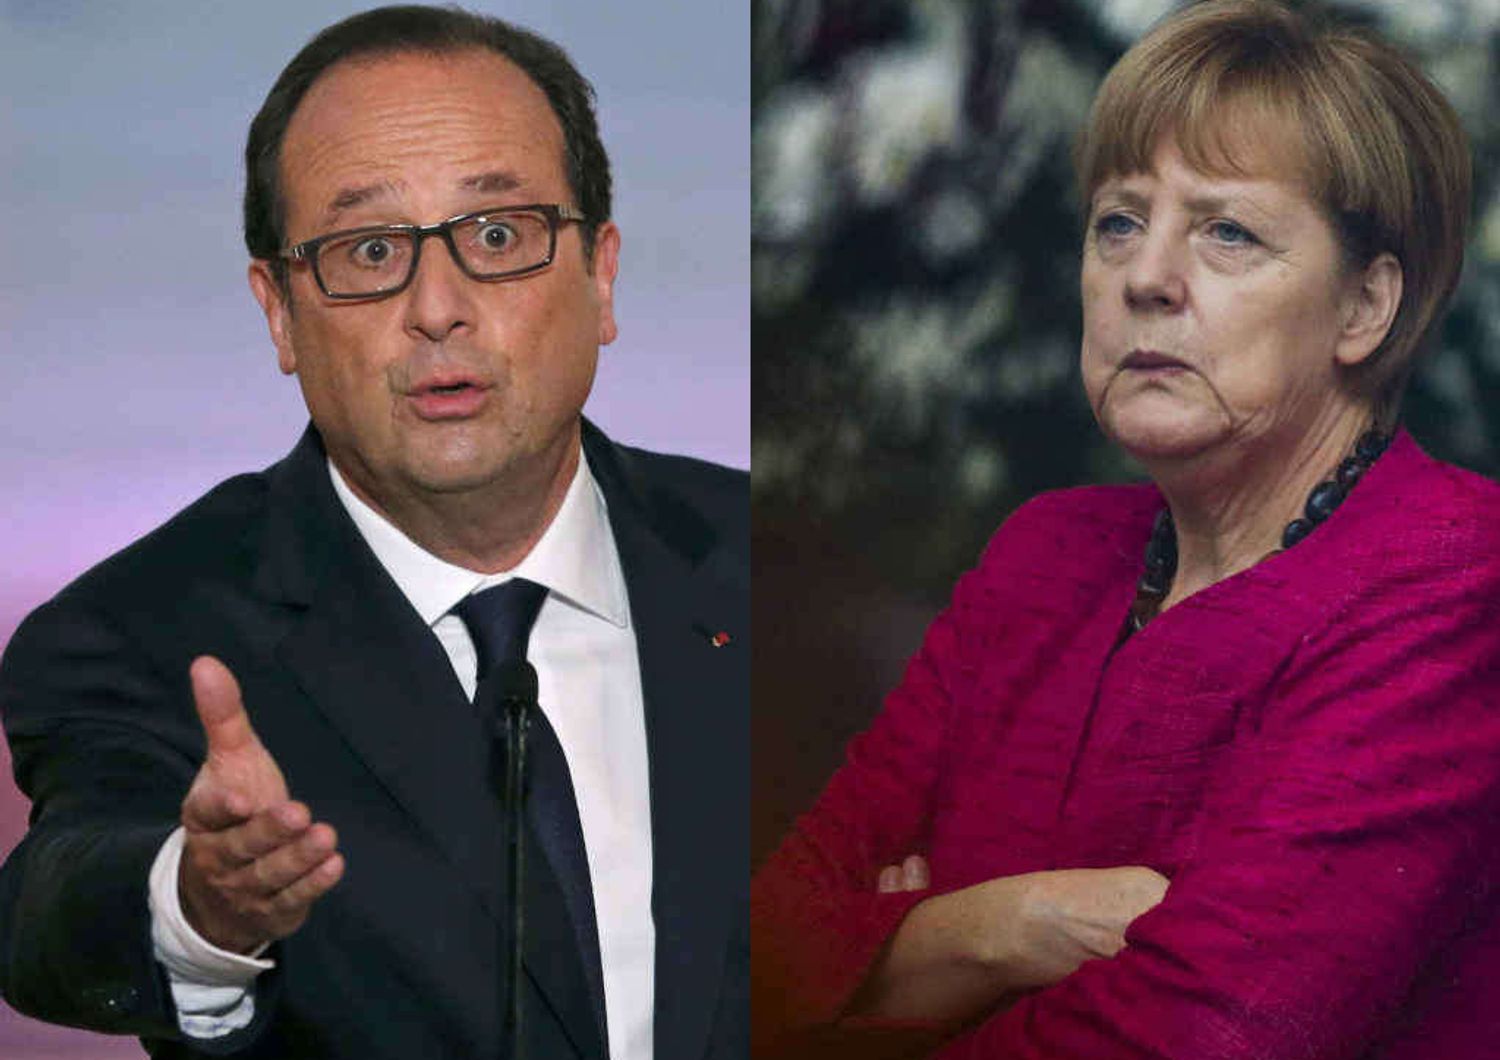 La Francia si ribella all'austerita'. Merkel, gli impegni si rispettano